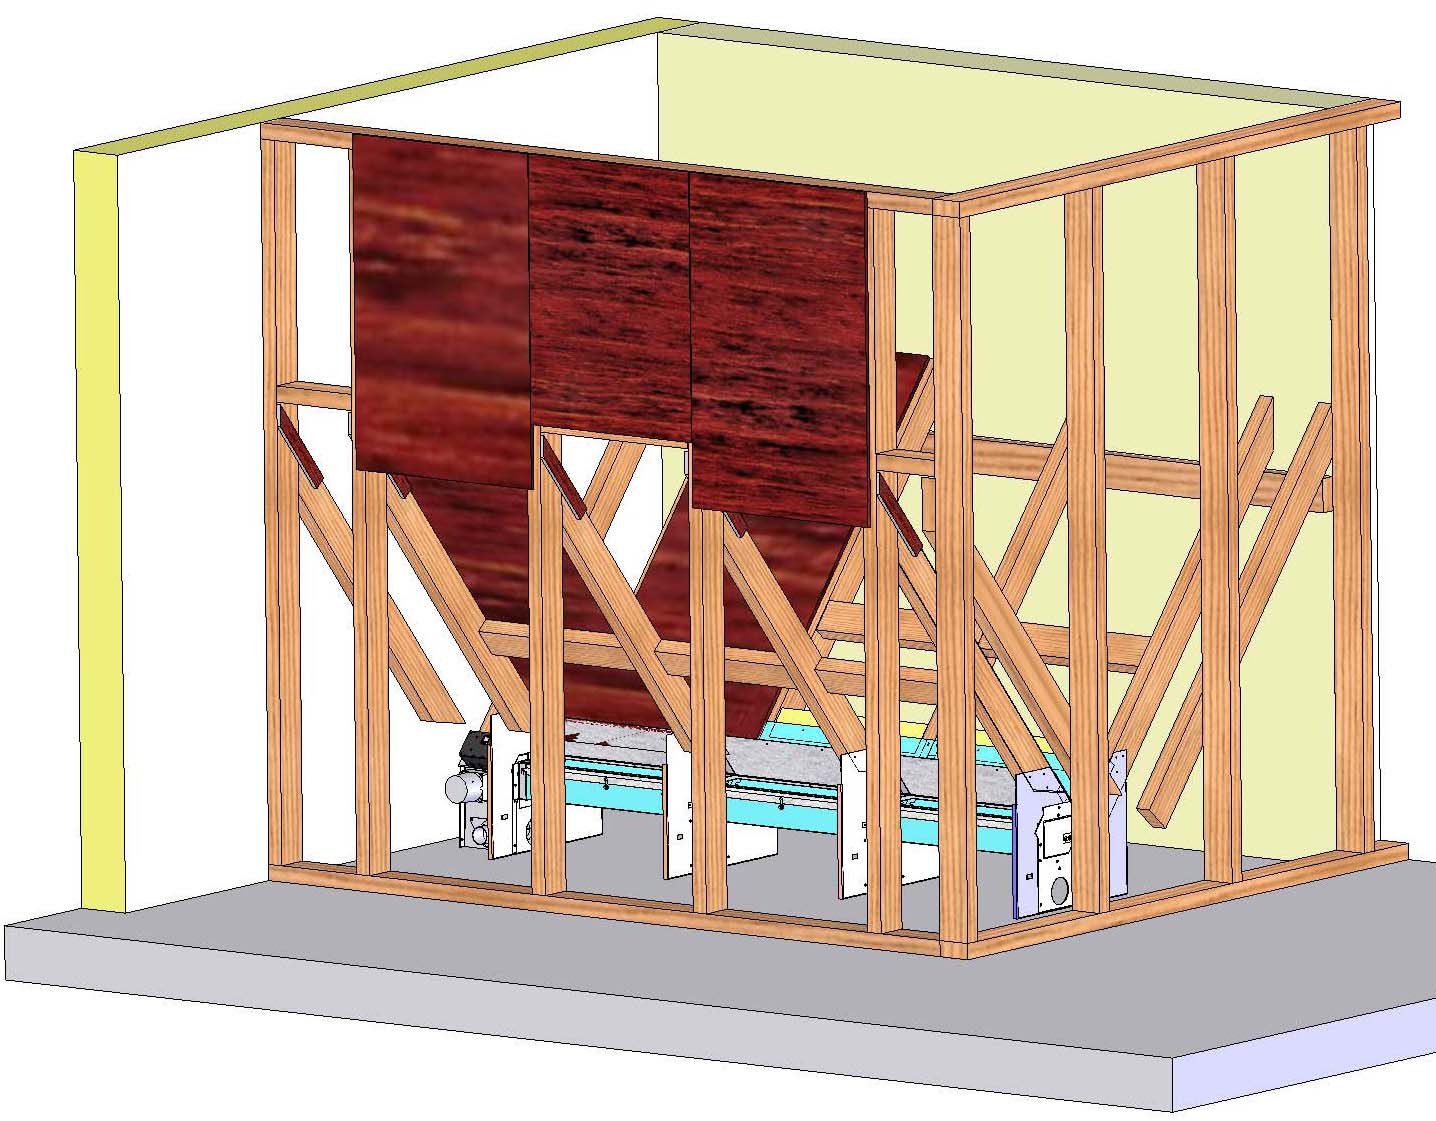 18 Montering av förrådets väggskivor Lägg gärna en sträng med tätningsmassa under skivans ytterkanter före fastskruvning. Någon öppningsbar lucka i förrådet är inte nödvändig.